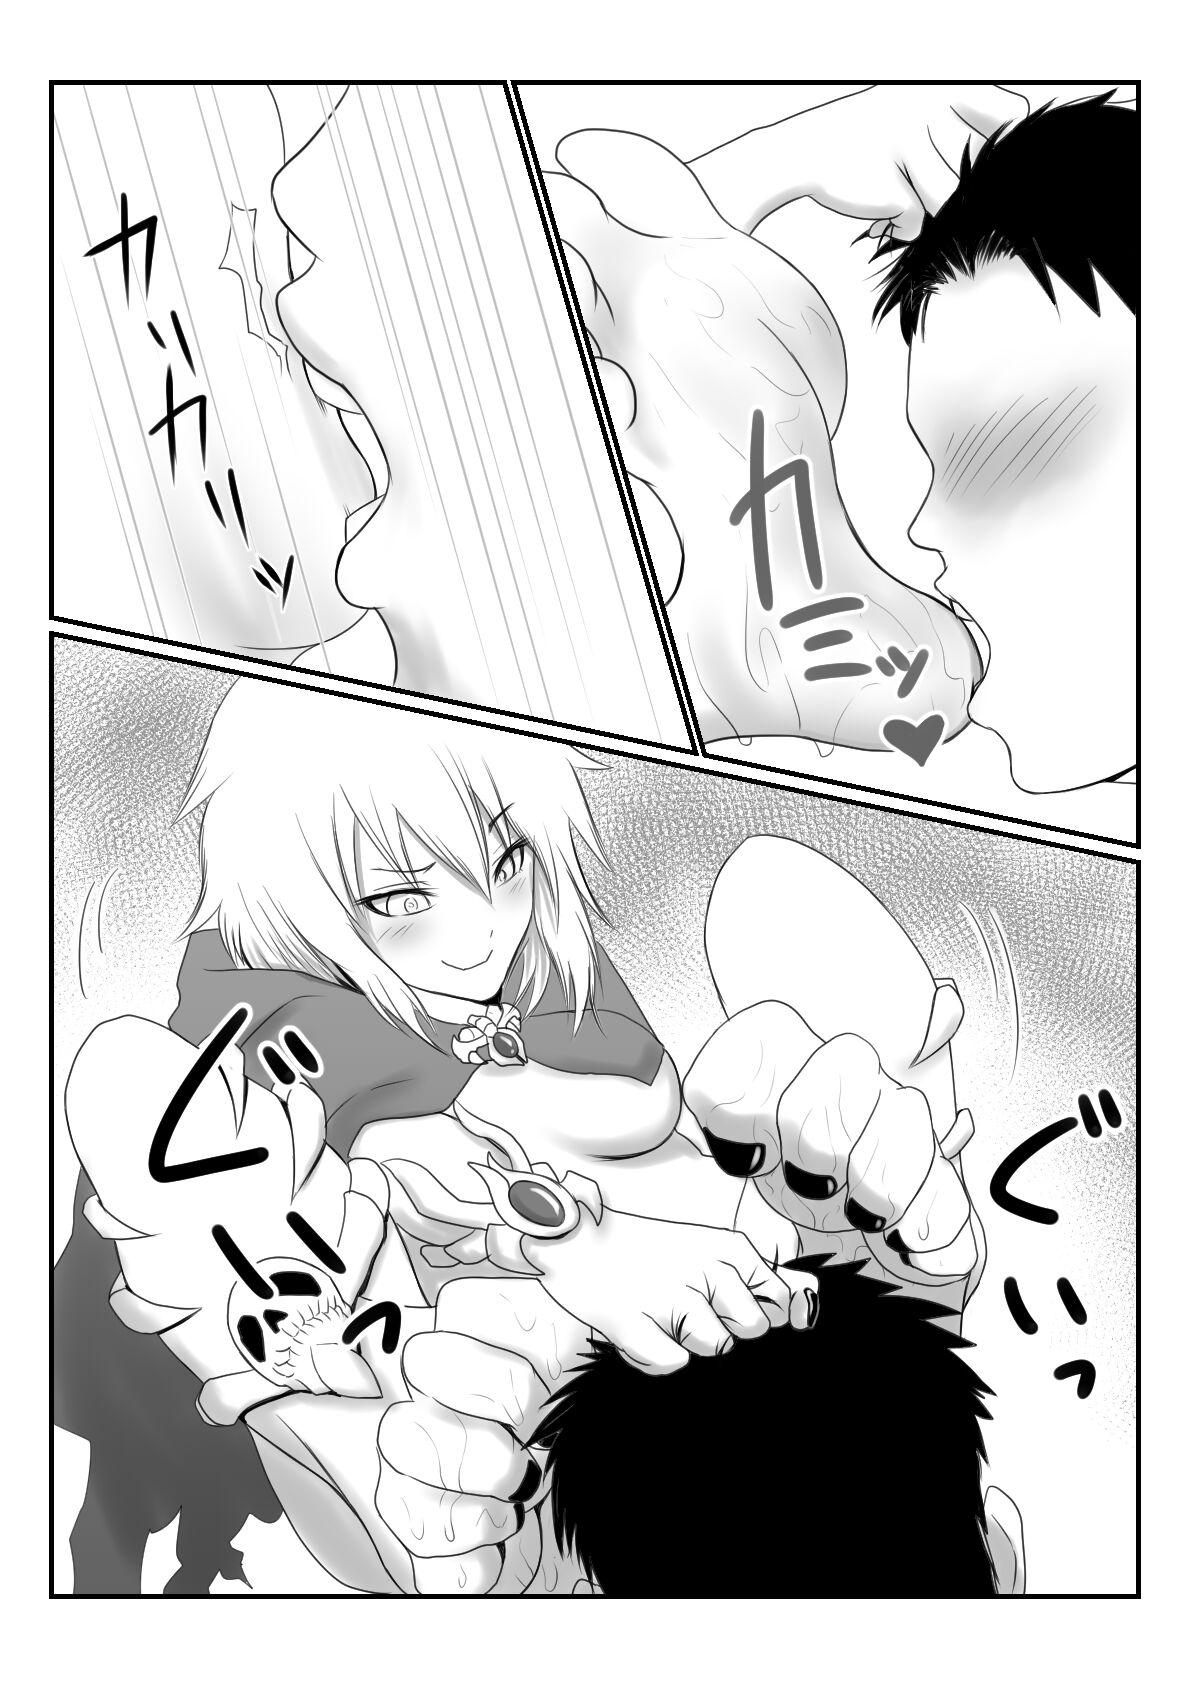 Lich Manga 7